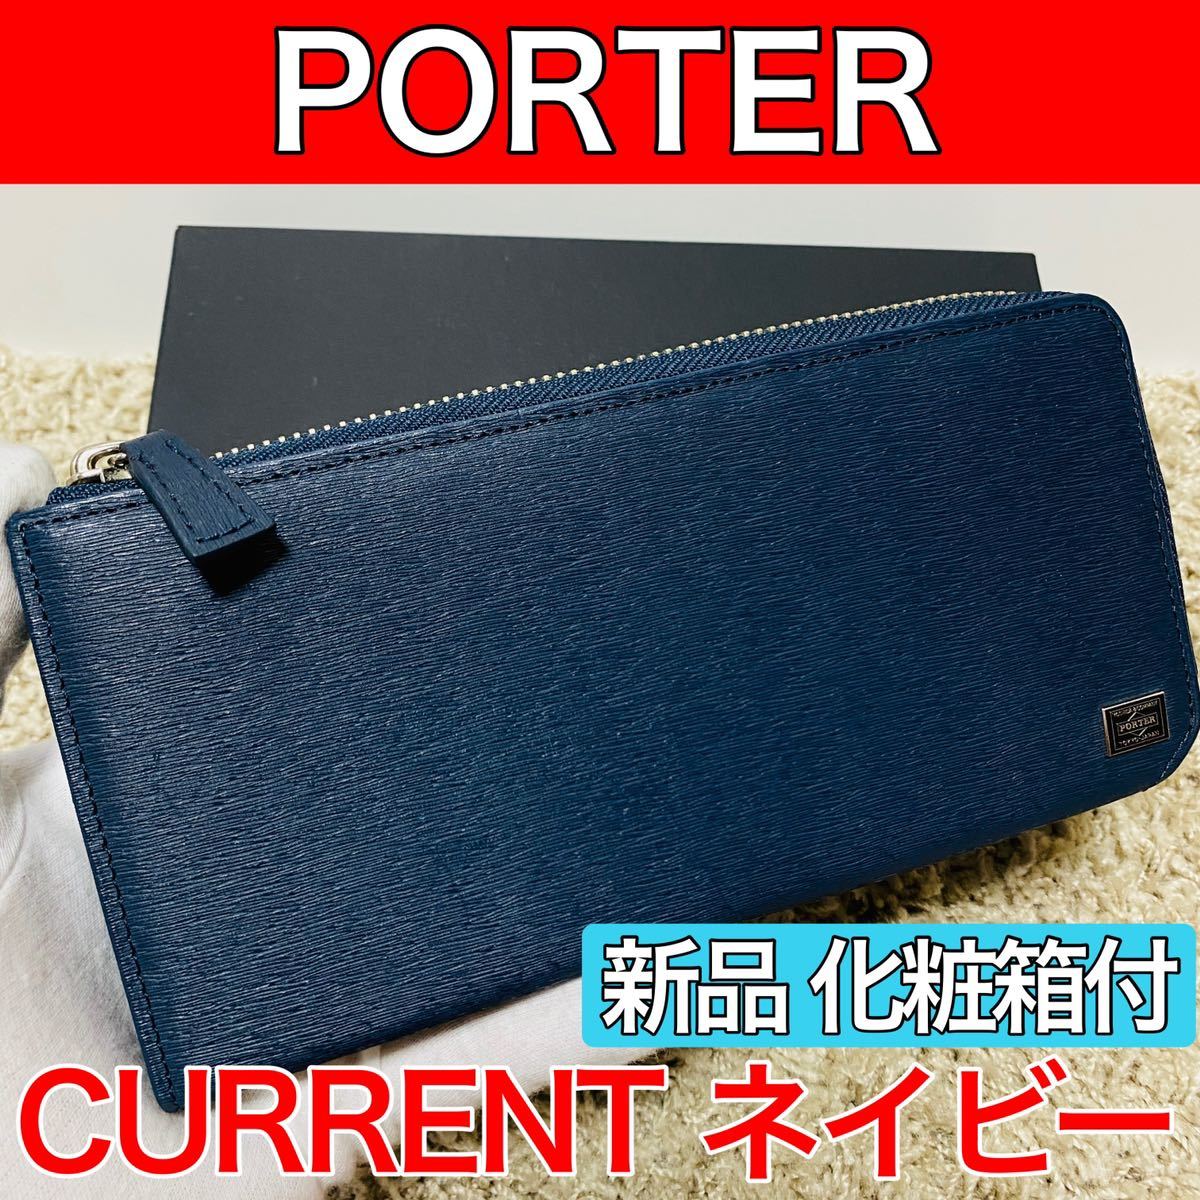 最安価格(税込) PORTER - ポーター CURRENT カレント L字ファスナー